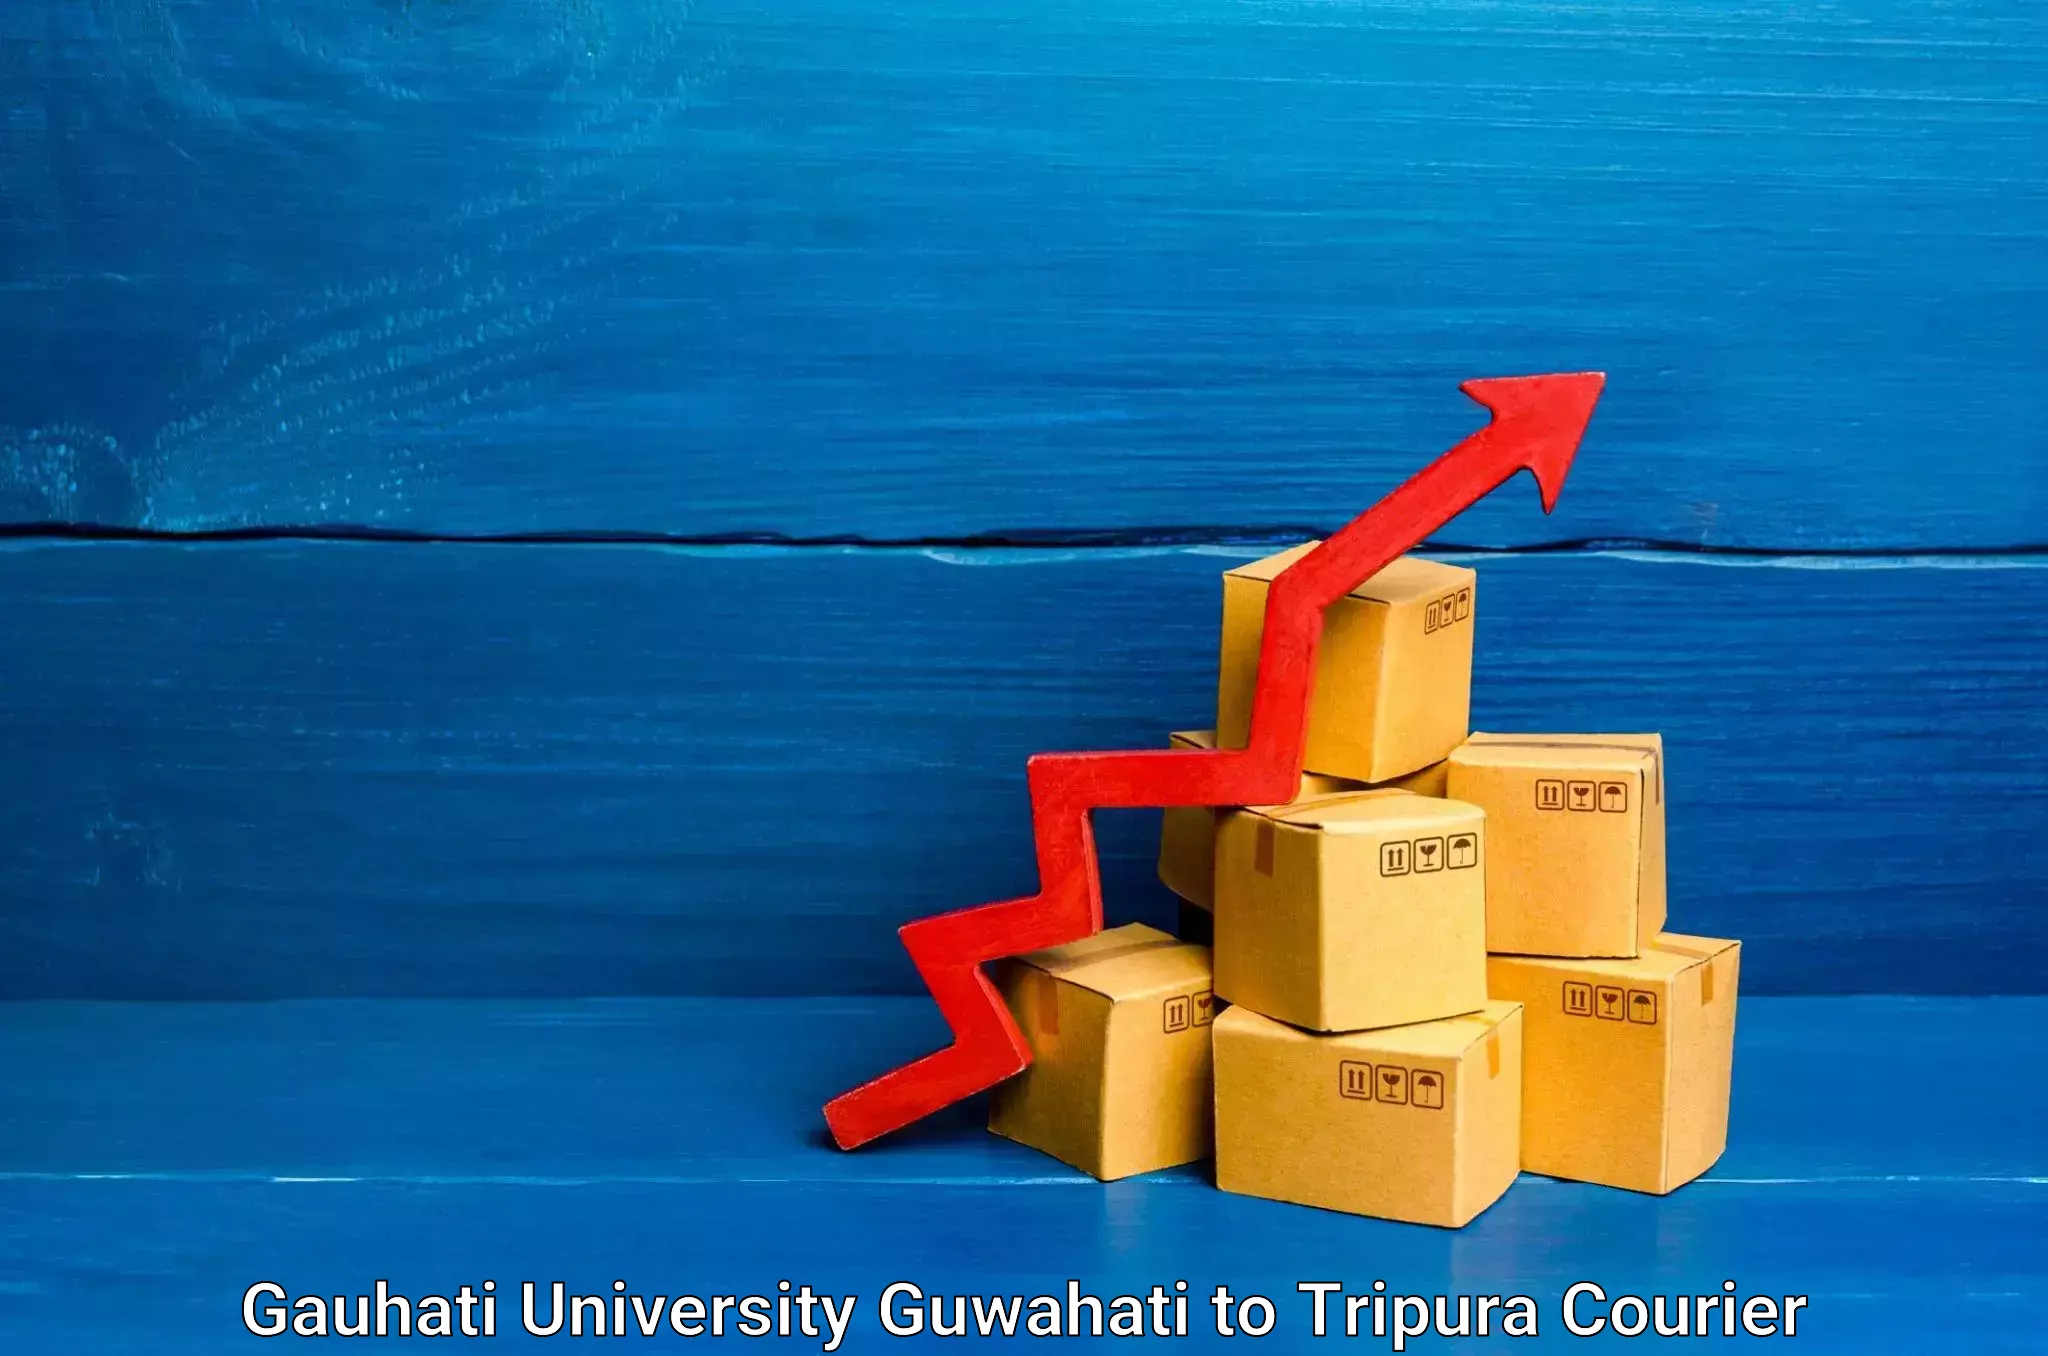 Nationwide shipping capabilities Gauhati University Guwahati to Bishalgarh